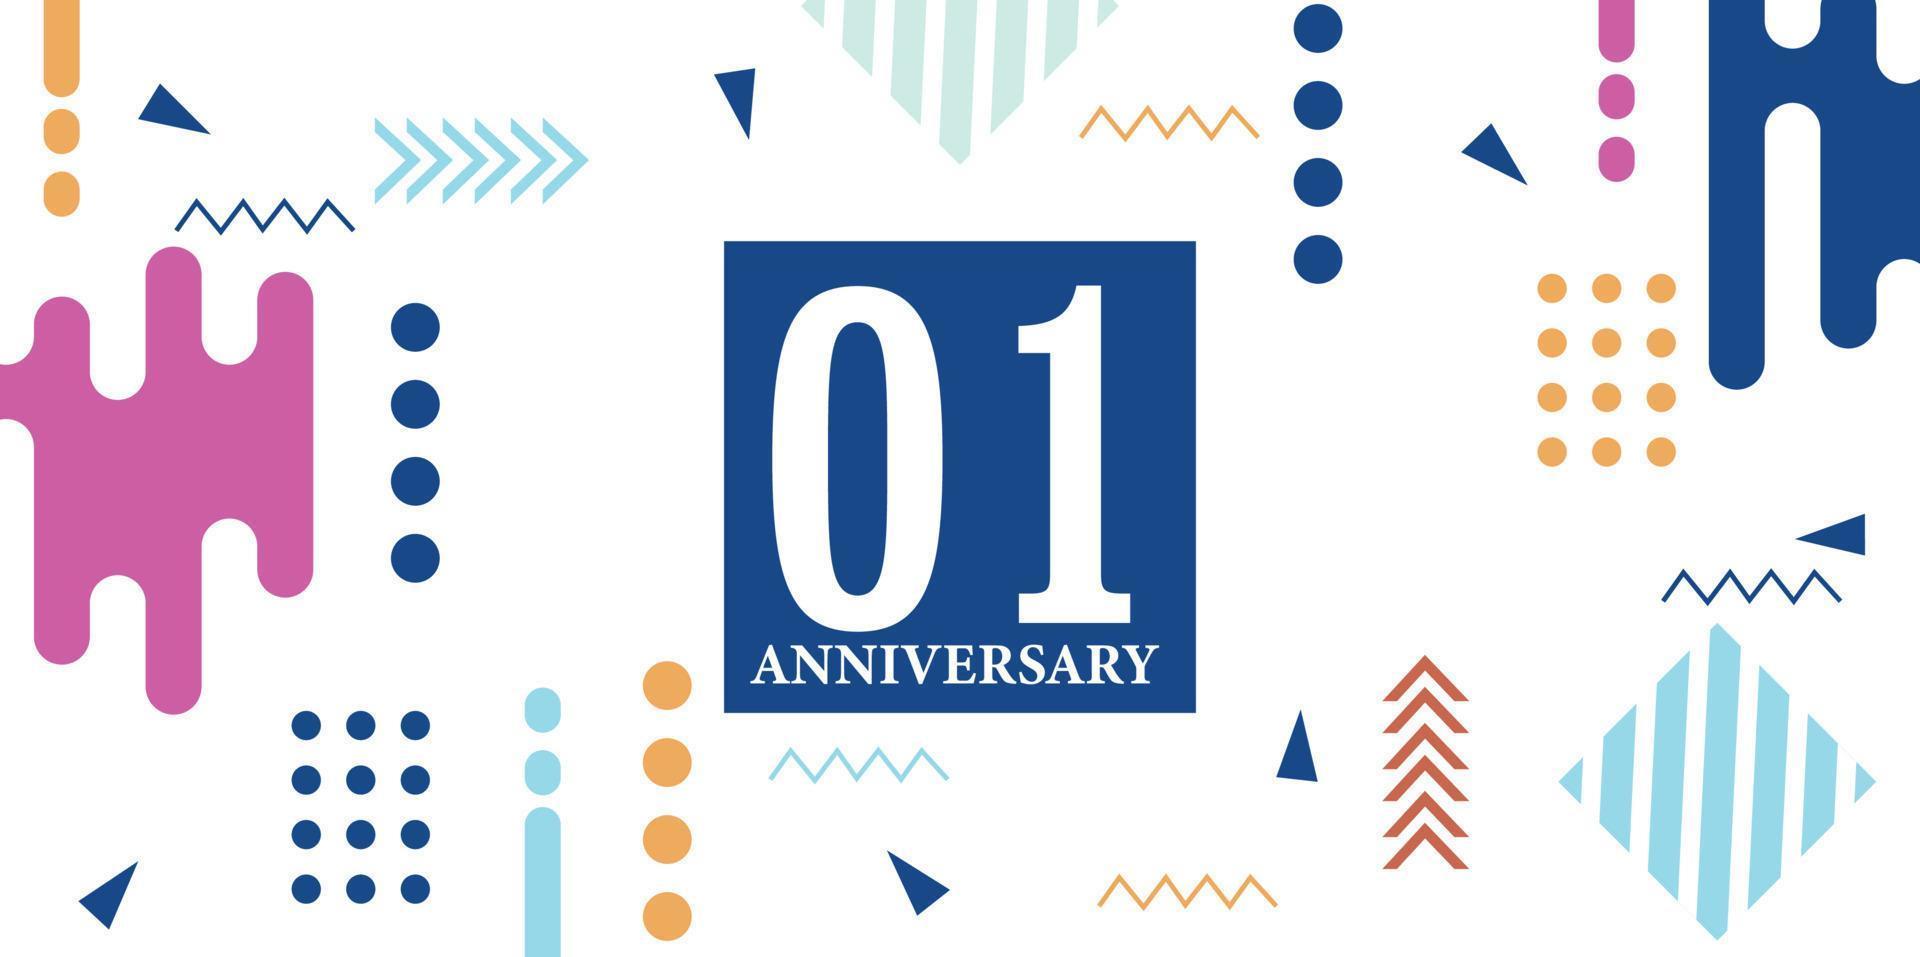 01 jaren verjaardag viering logotype wit getallen doopvont in blauw vorm met kleurrijk abstract ontwerp Aan wit achtergrond vector illustratie